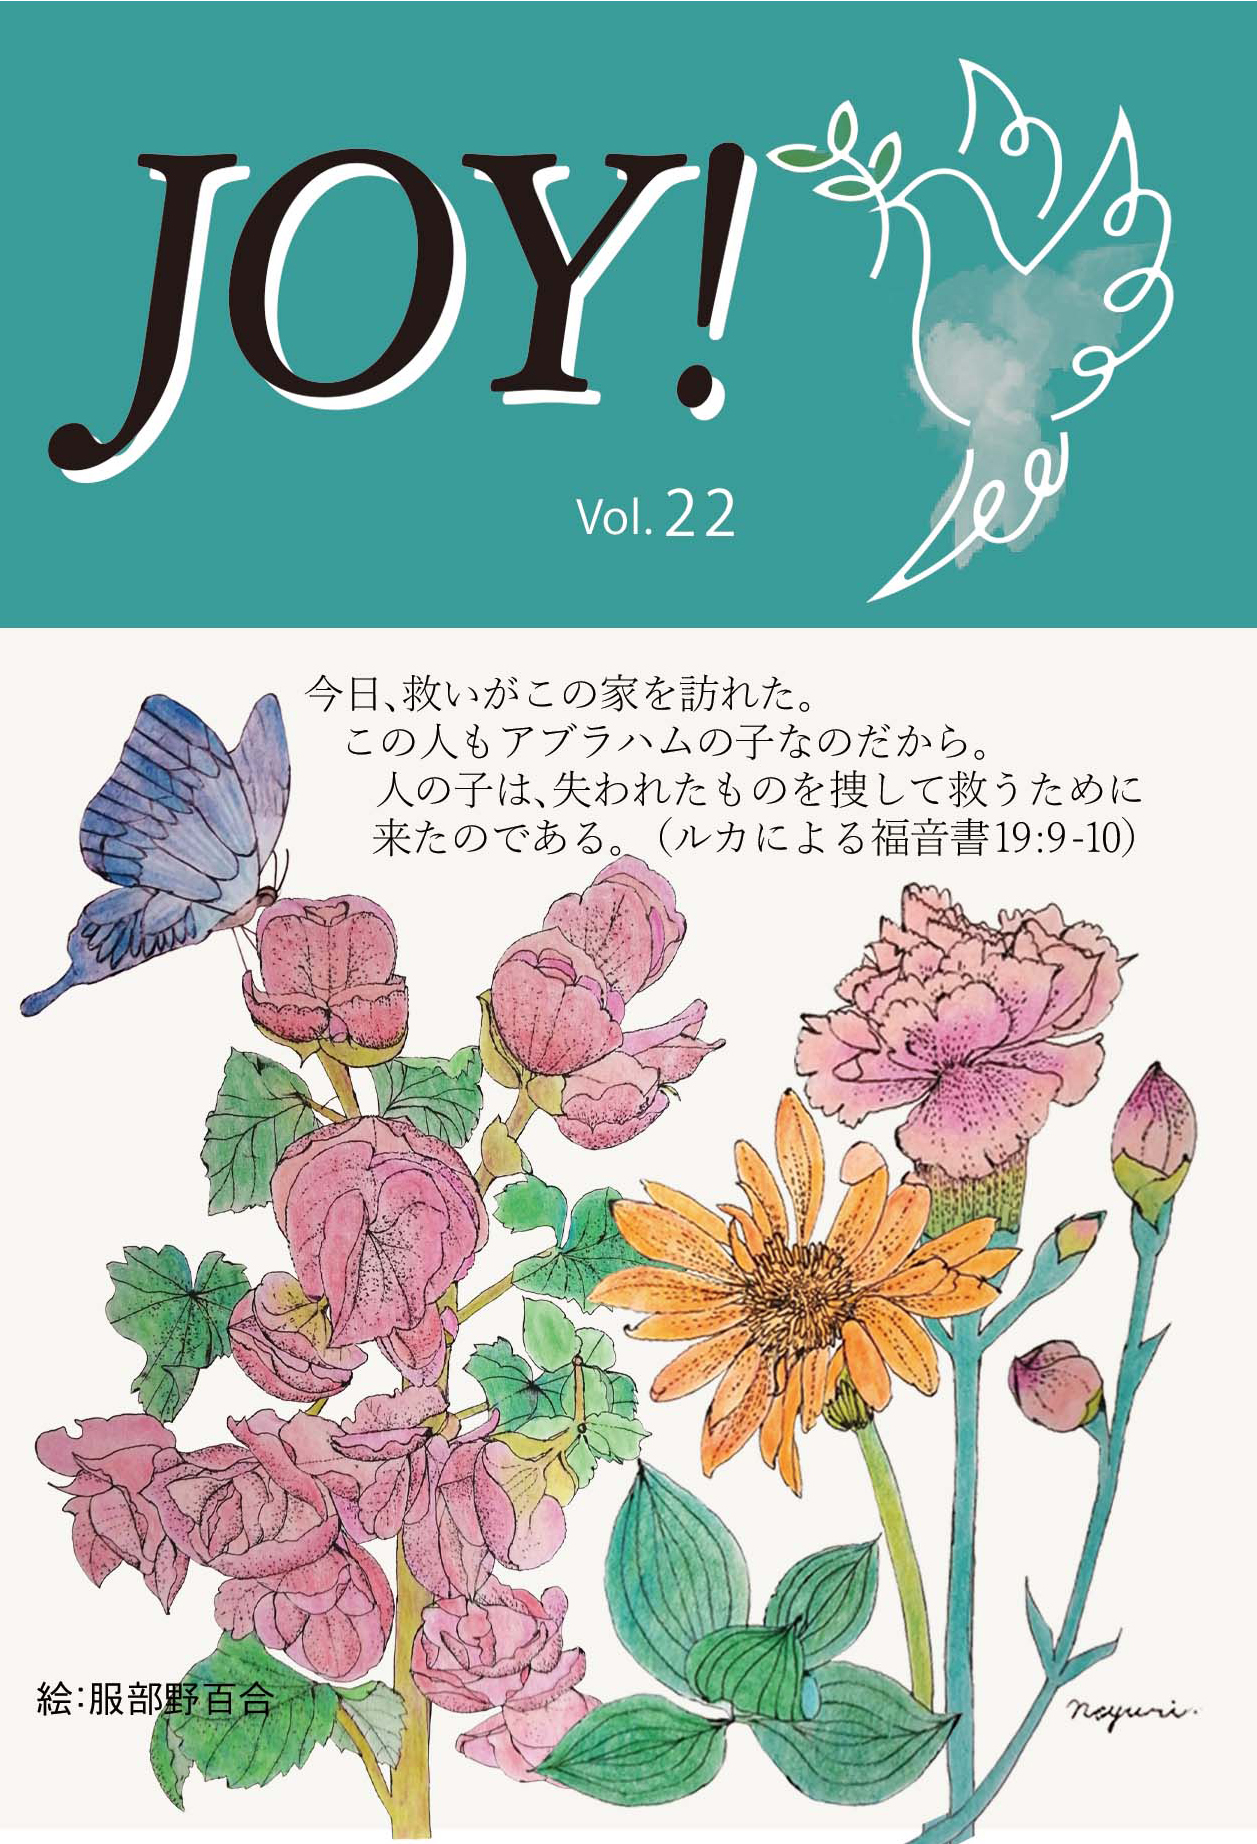 季刊紙 『JOY!』春号配布中(Vol.22)